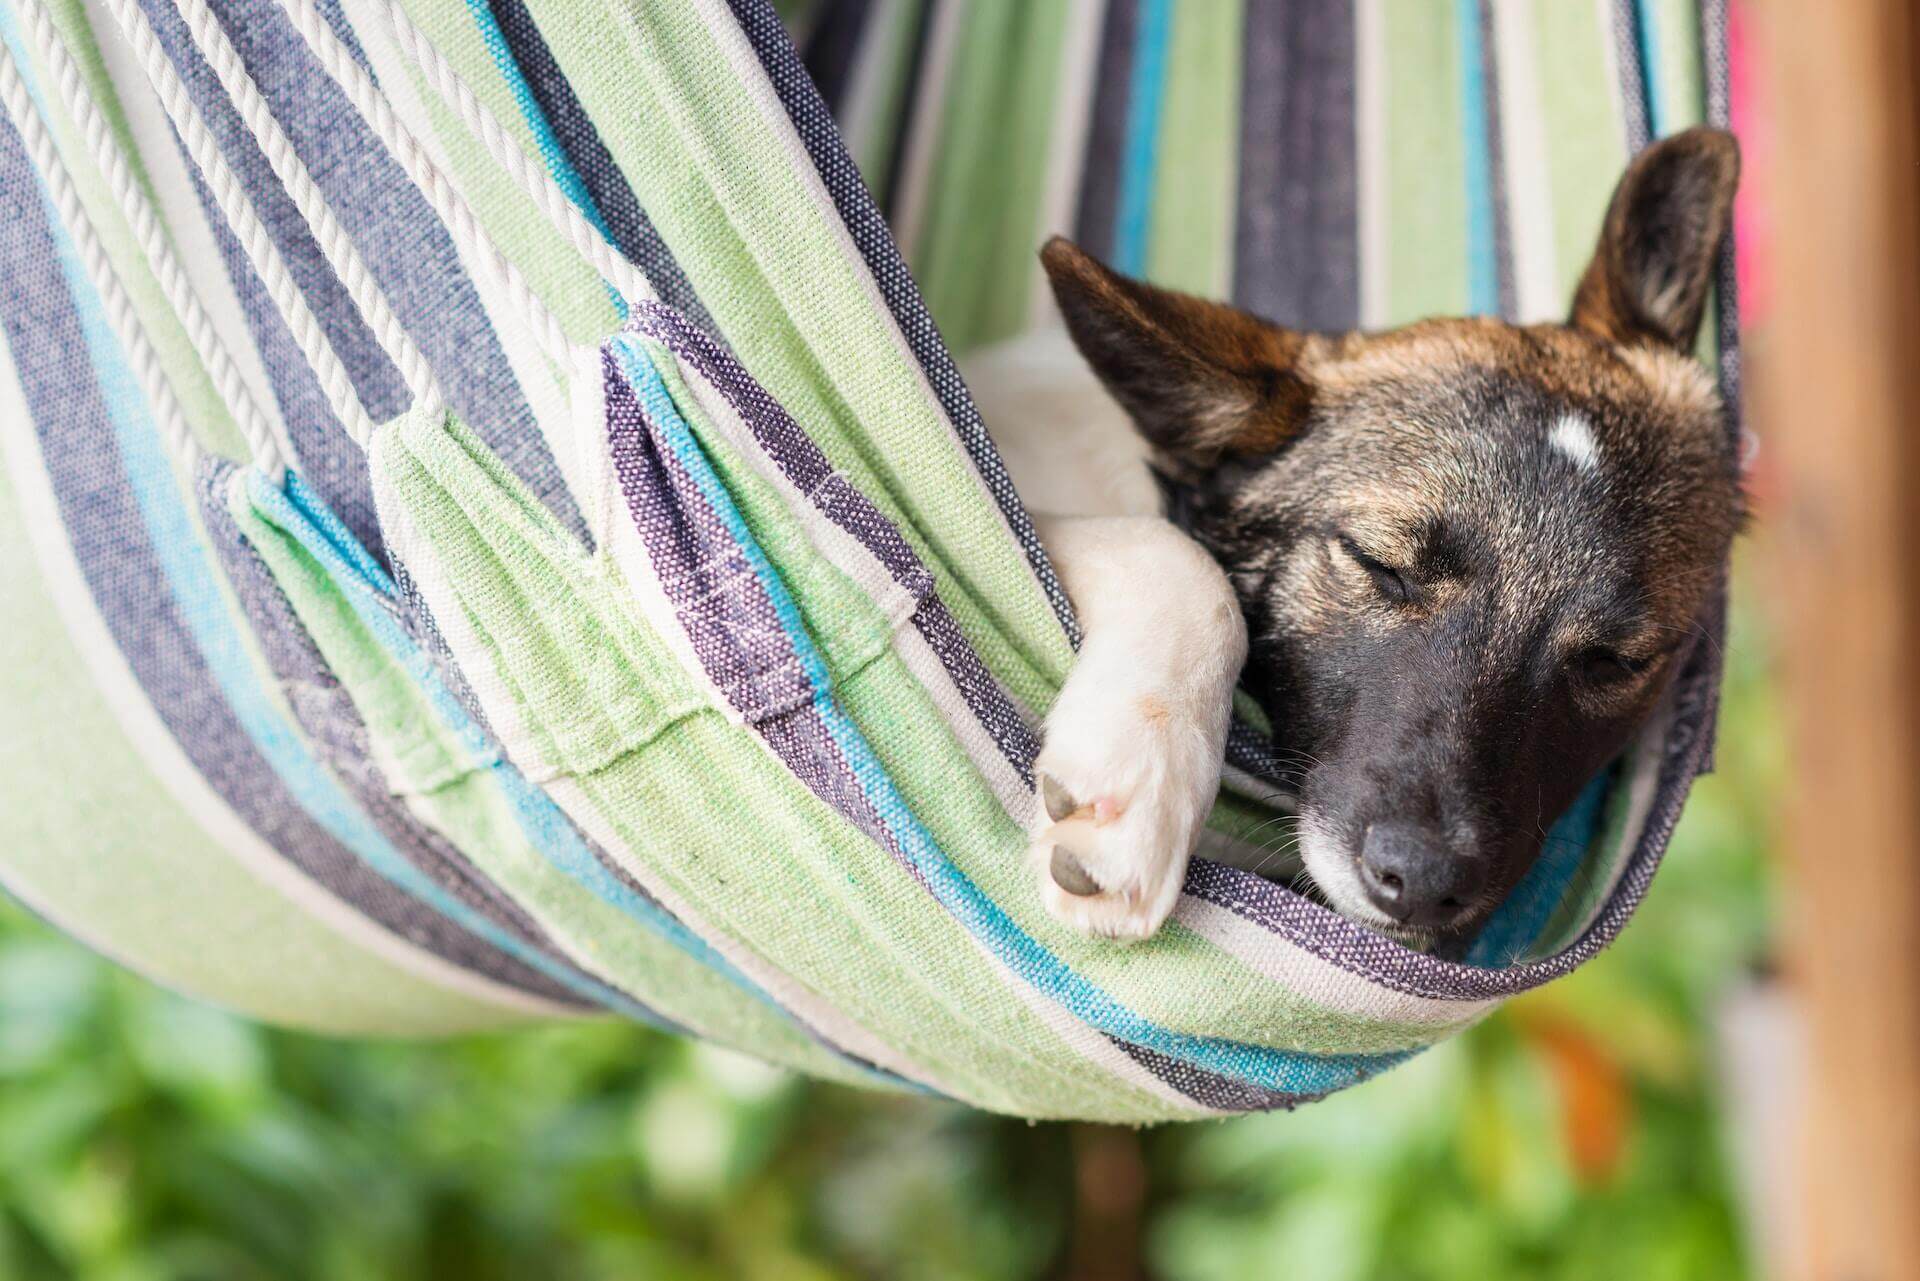 A dog sleeping in a hammock outdoors